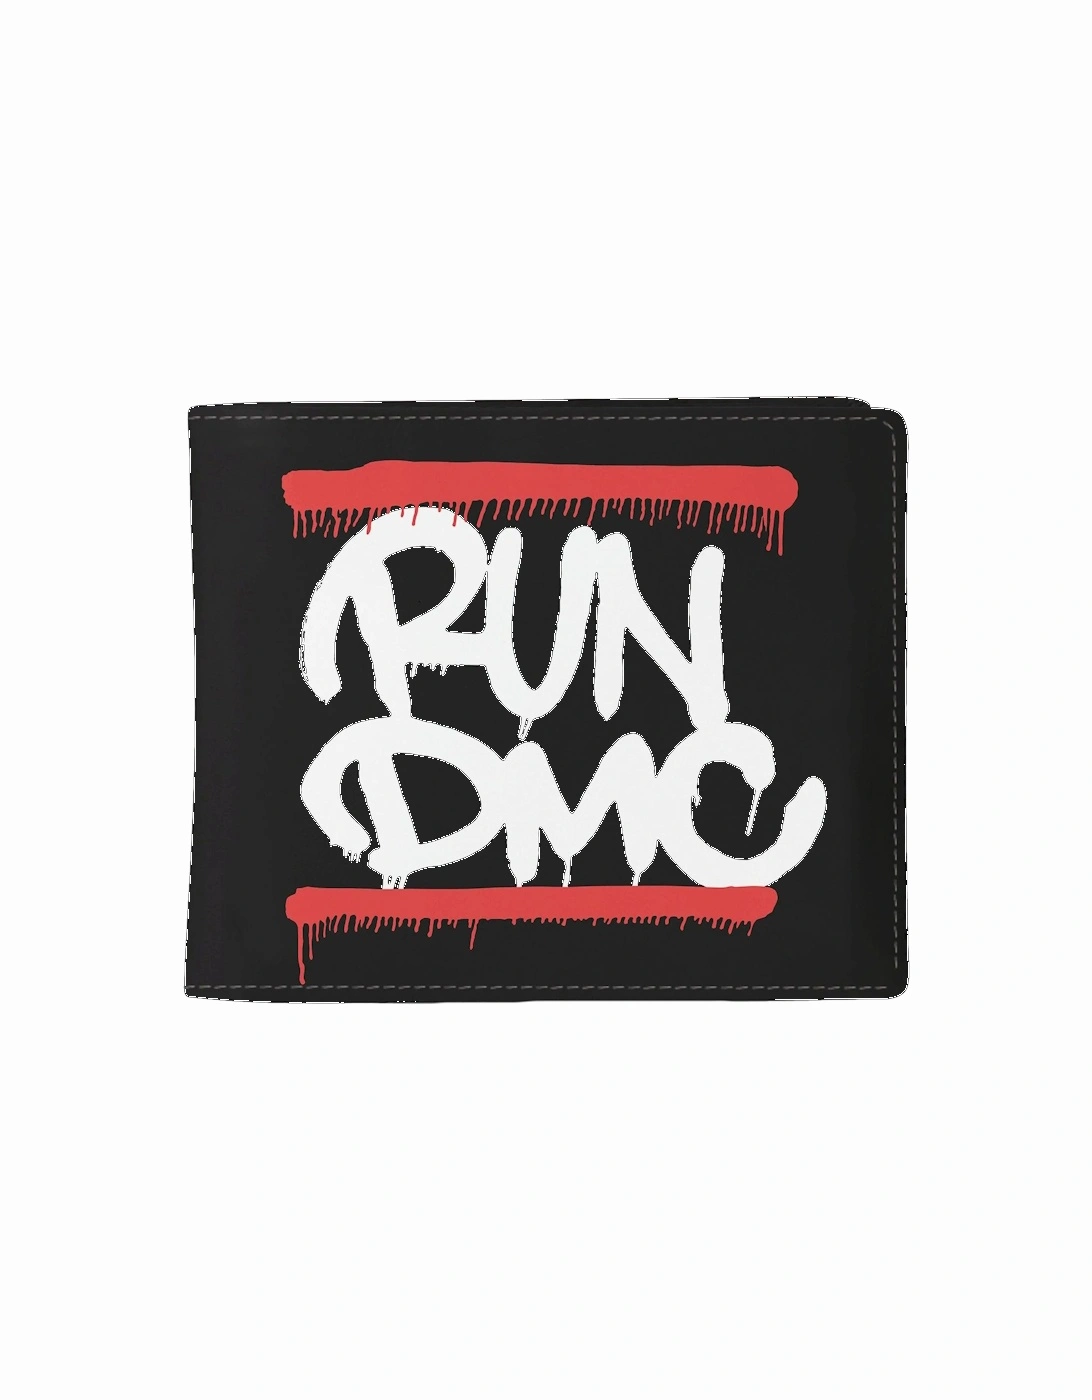 Graffiti Run DMC Wallet, 2 of 1